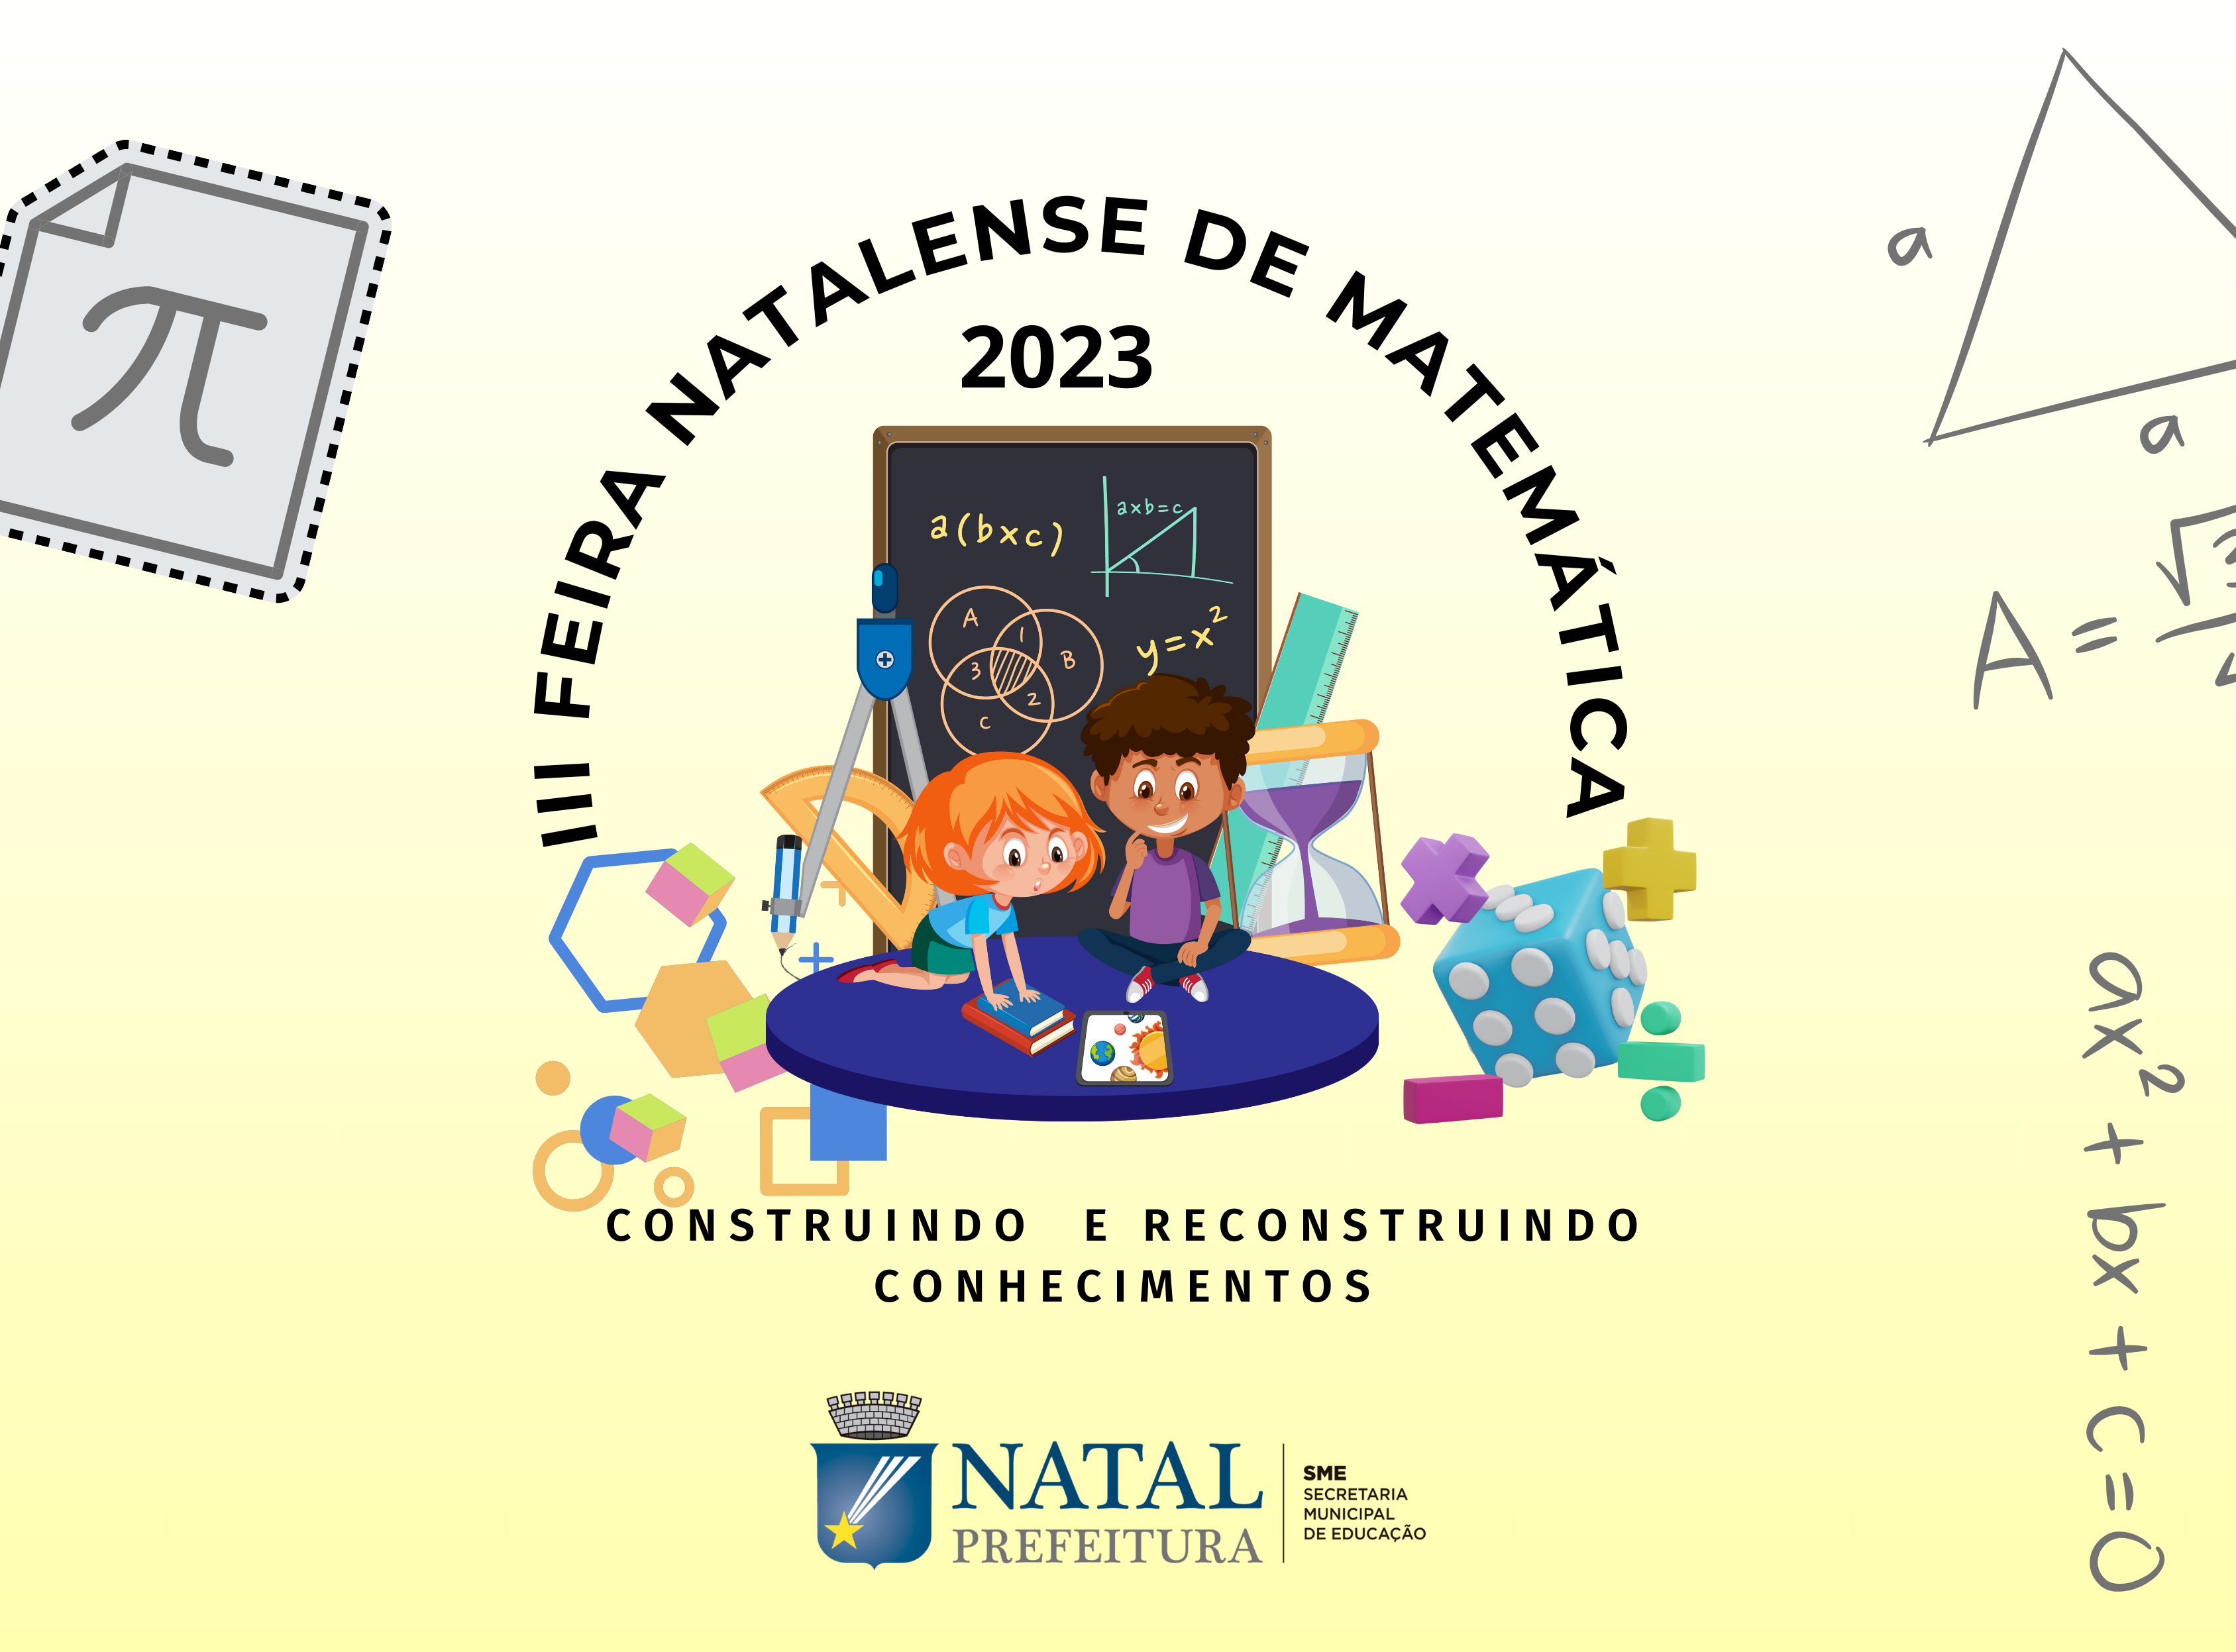 Prefeitura do Natal promove a III Feira Natalense de Matemática